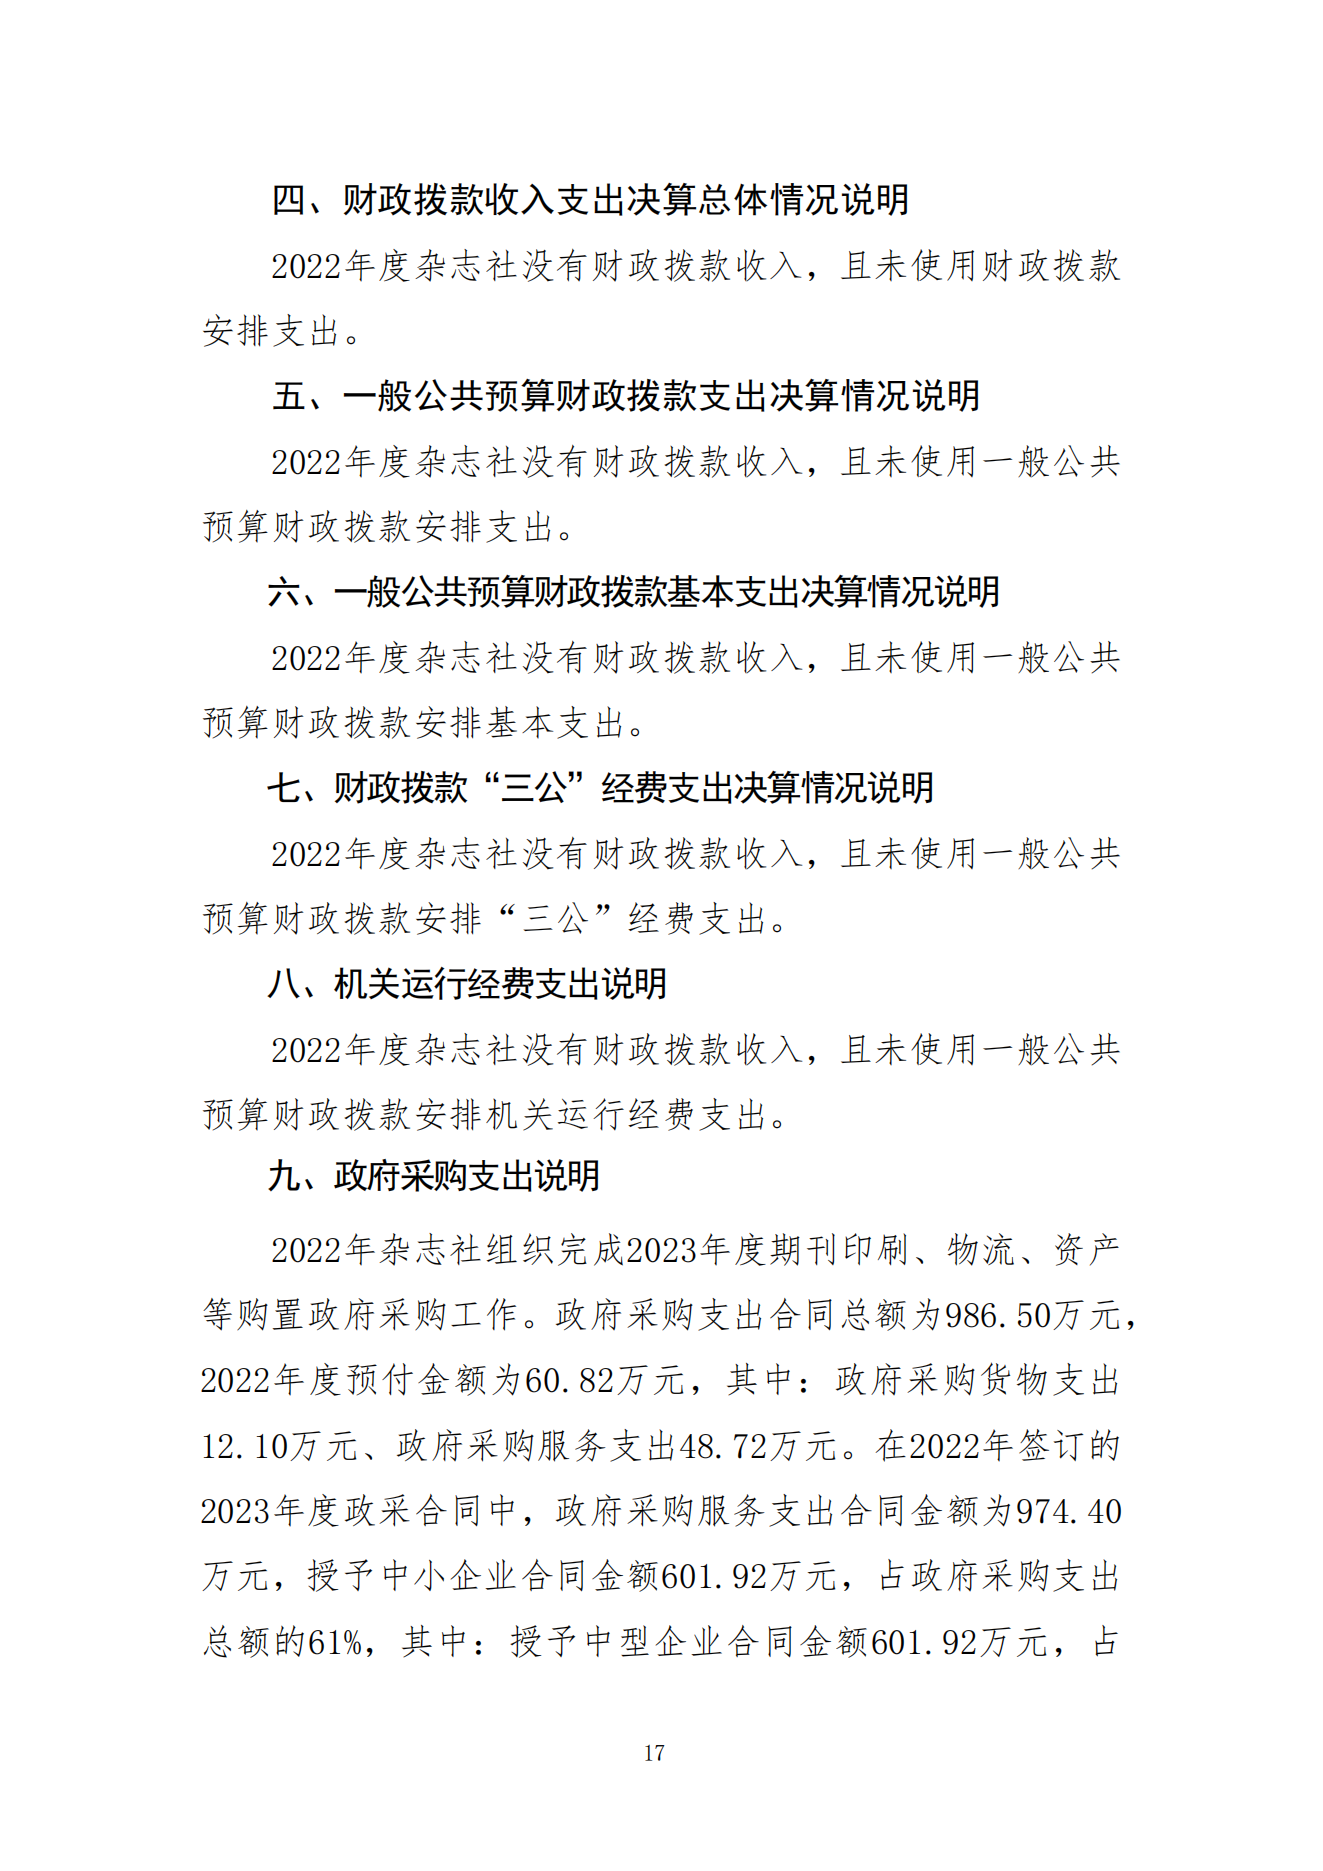 2023年8月7日 中国财政杂志社2022年度决算公开稿(1)_19.png